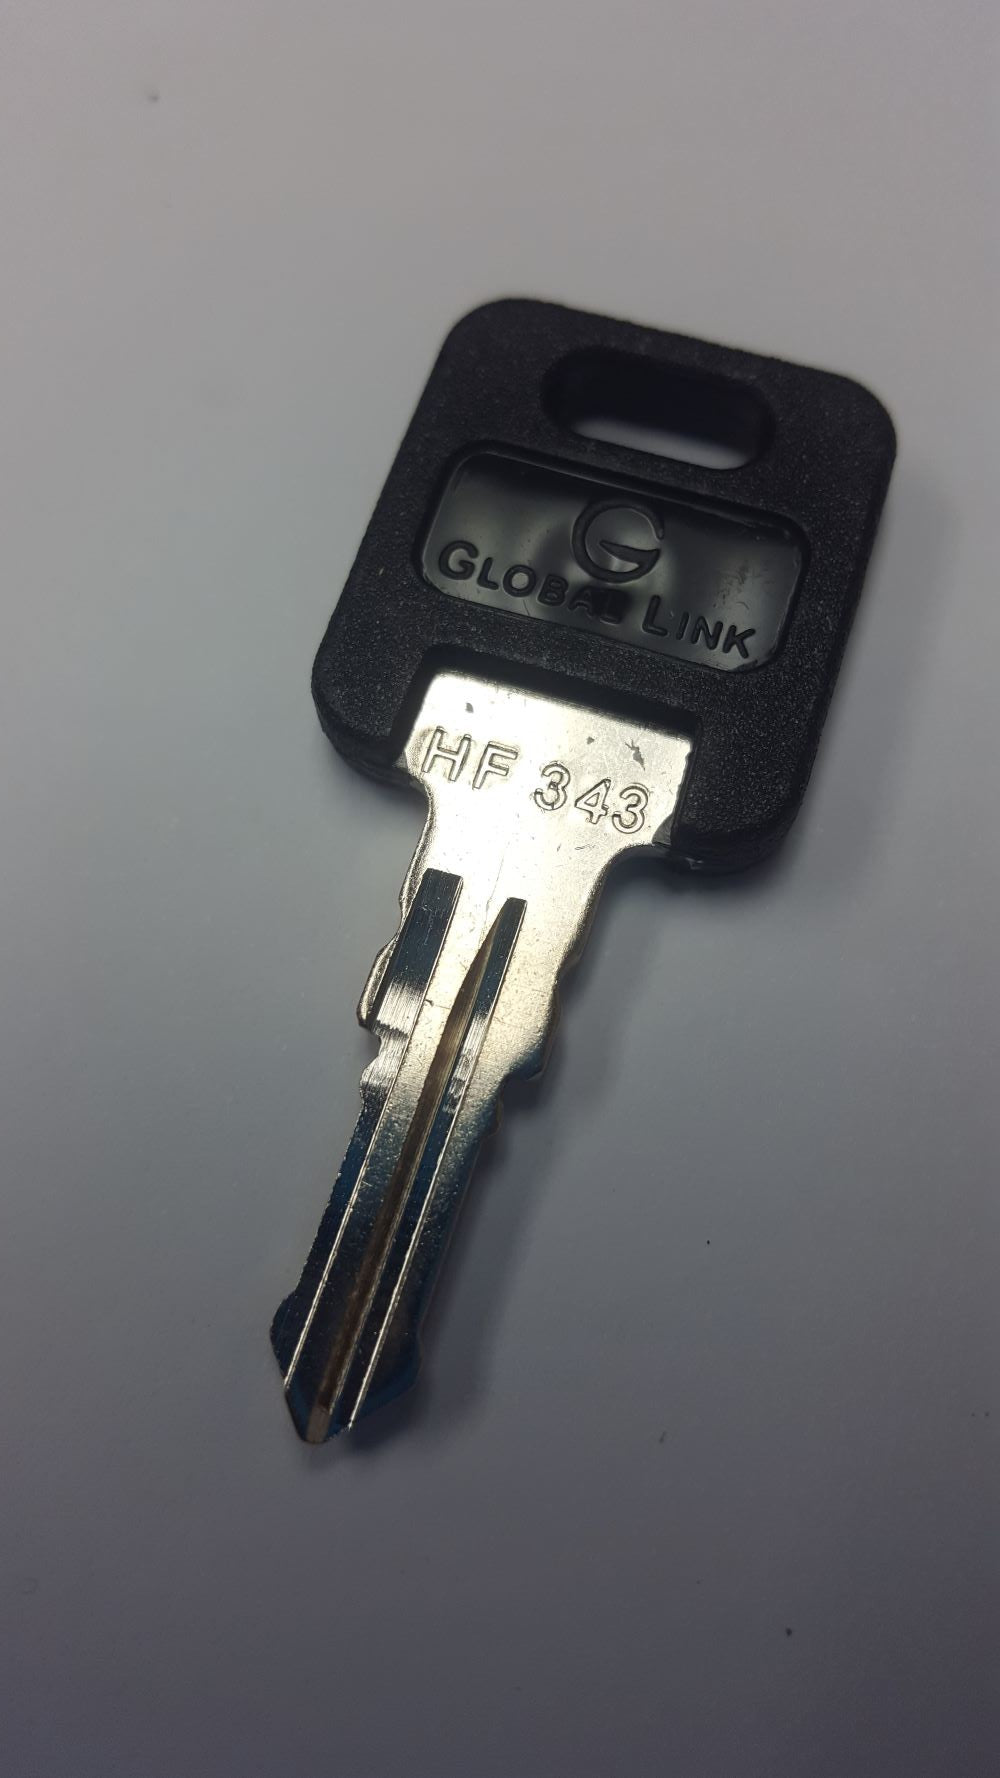 CPG KEY-HF-343 Pre-cut Stamped FIC Replacemnt HF343 Key